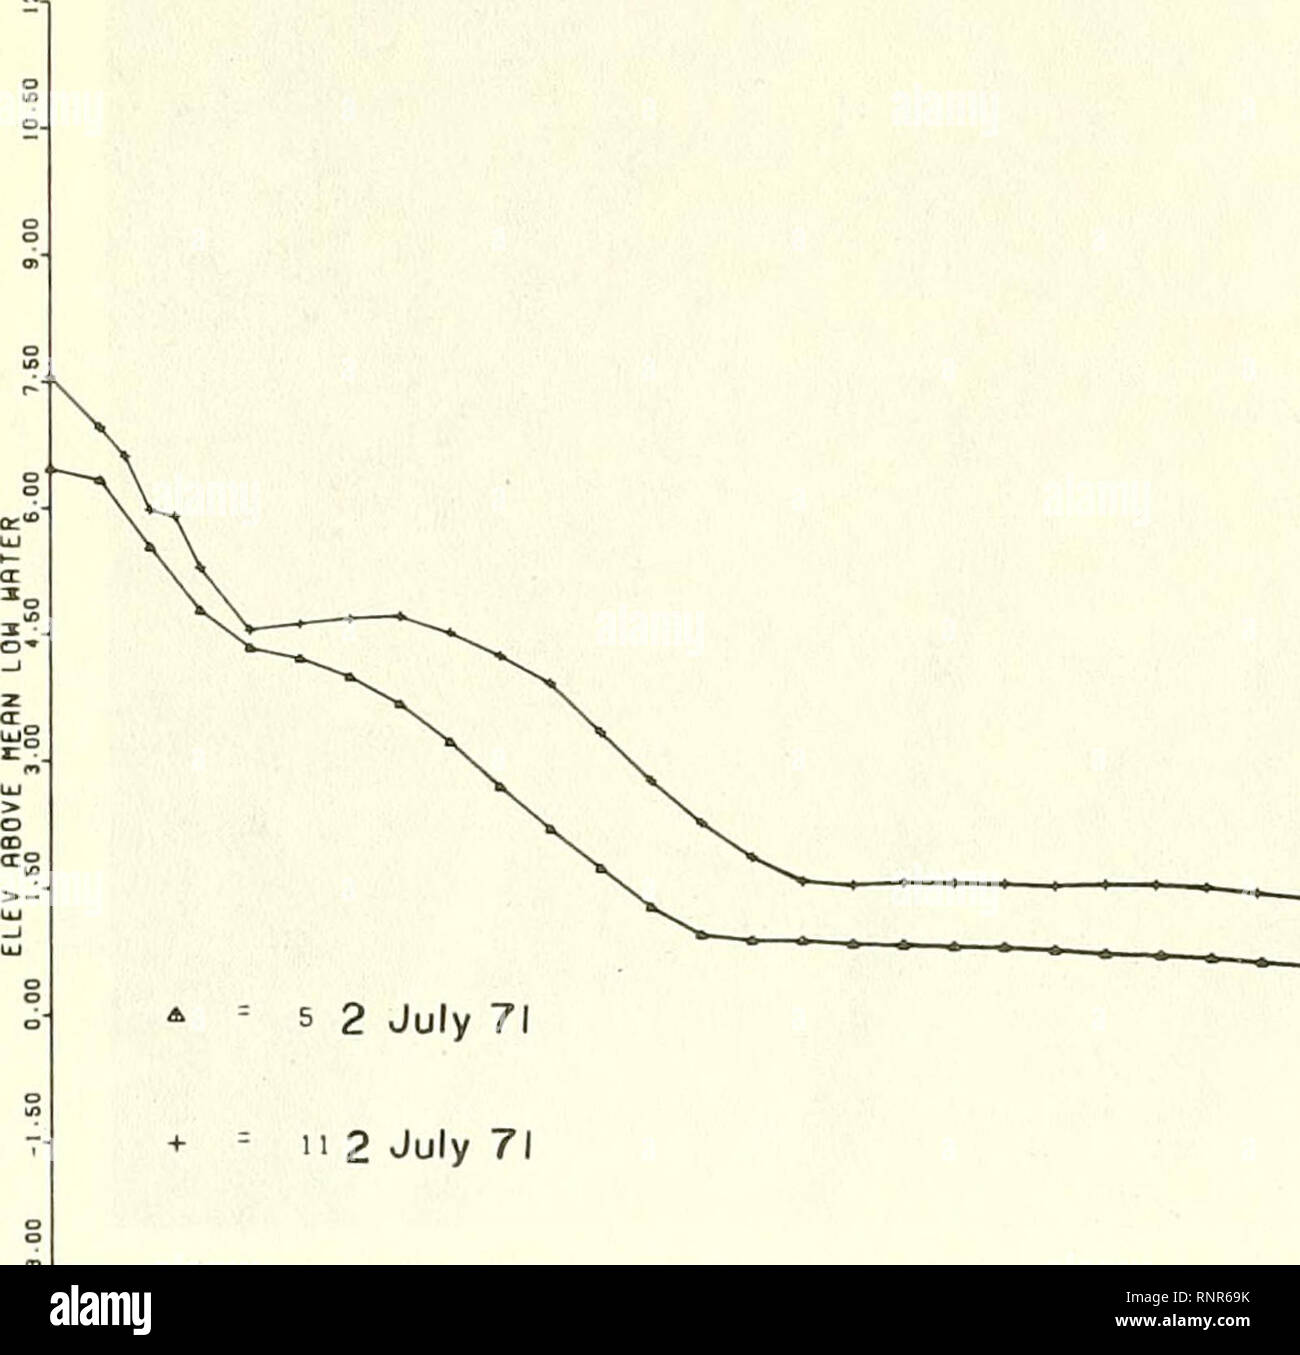 . L'analyse des variations à court terme dans la morphologie de la plage ( et les processus dynamiques ) pour les périodes d'été et d'hiver, 1971-1972, Plum Island, Massachusetts. Les plages, les vagues de l'océan. 7tre STno si,si ' eb.oo.oo 7i eVsc "k-fo to-oo.oo ibs V.m "iko nrio.oo Je ? ?.* La Figure 14. Adulte PL-0 et PL-5, 2 juillet 1971.. n 2 71 juillet EST^JO 22 .so 30,00 37,60 "B-00B2.B0eb-00 87. BO 7B00 08. BO to.00 J7.B0 lb5.00 lll.bO ItO-OO Figure 15. Adulte PL-5 et PL-11, 2 juillet 1971. 34. Veuillez noter que ces images sont extraites de la page numérisée des images qui peuvent avoir été retouchées numériquement pour plus de lisibilité - colorati Banque D'Images